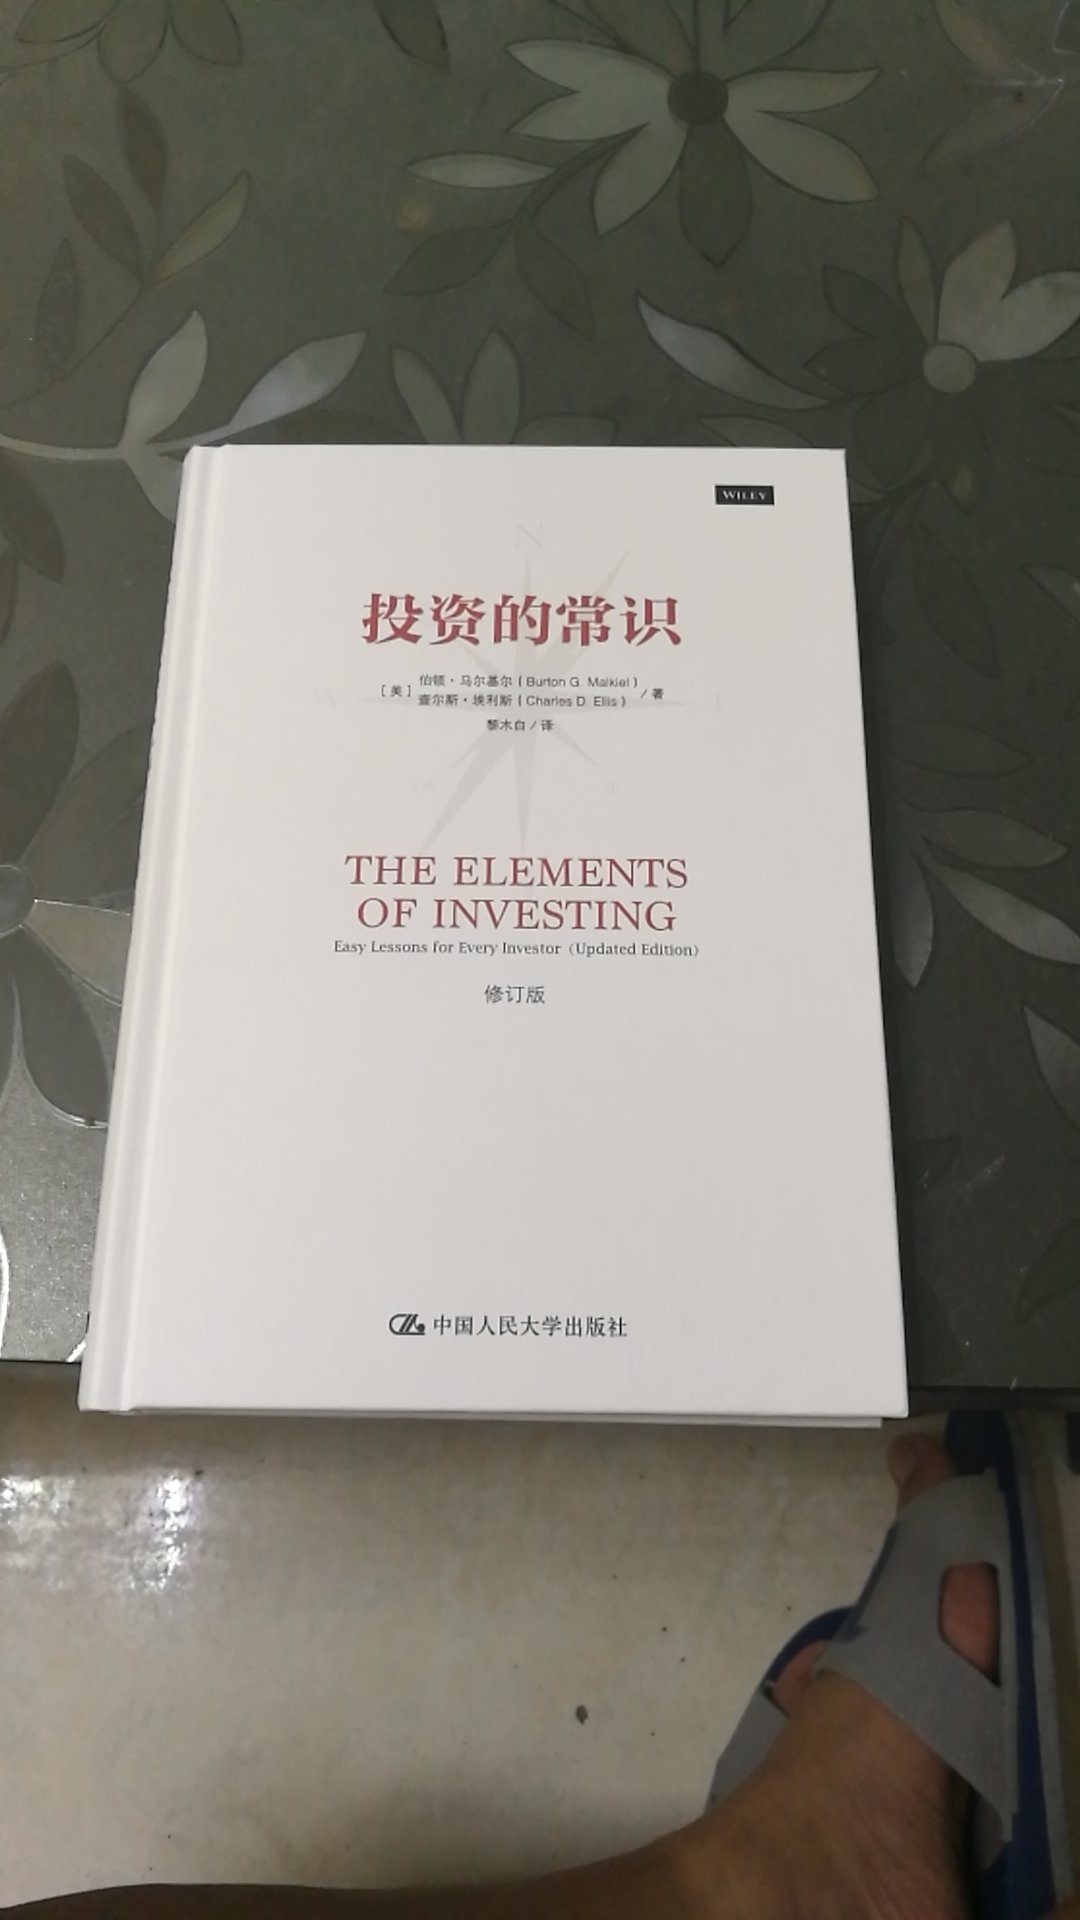 投资的常识简单又不简单，很多人将投资过于复杂化了，反而忘记了最基本最可靠的常识，本书很值得一读